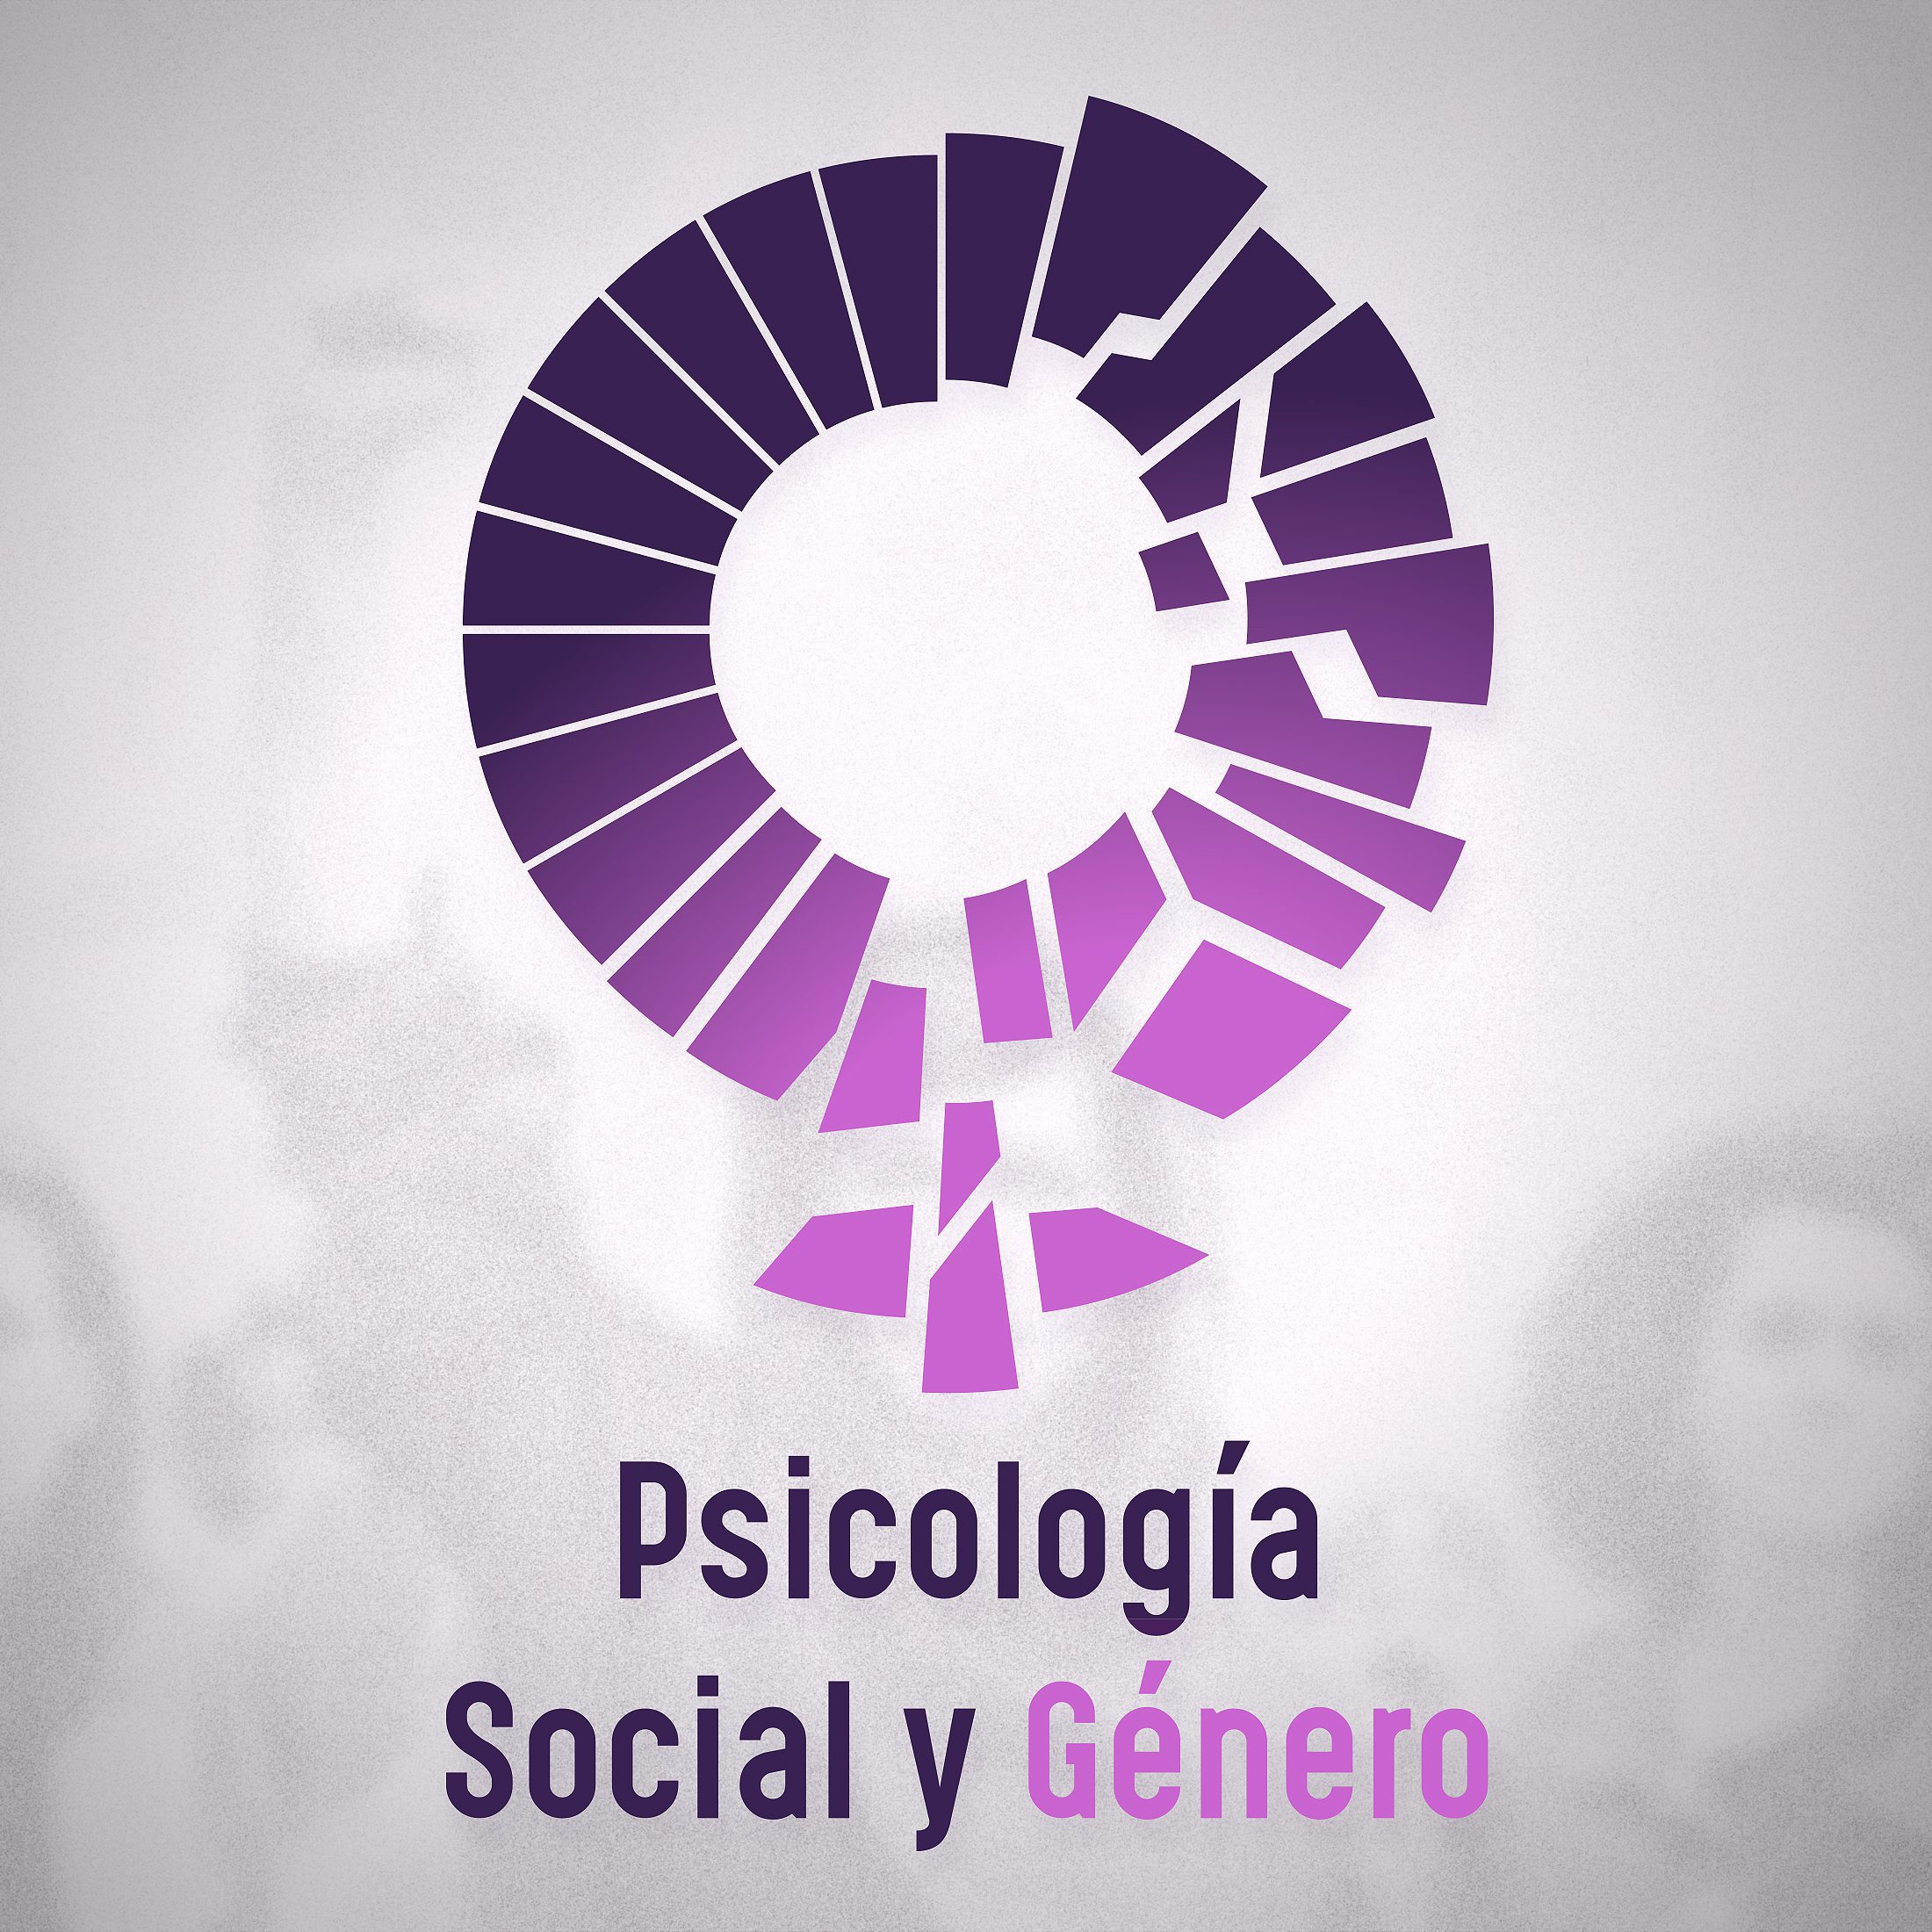 Psicología Social y Género